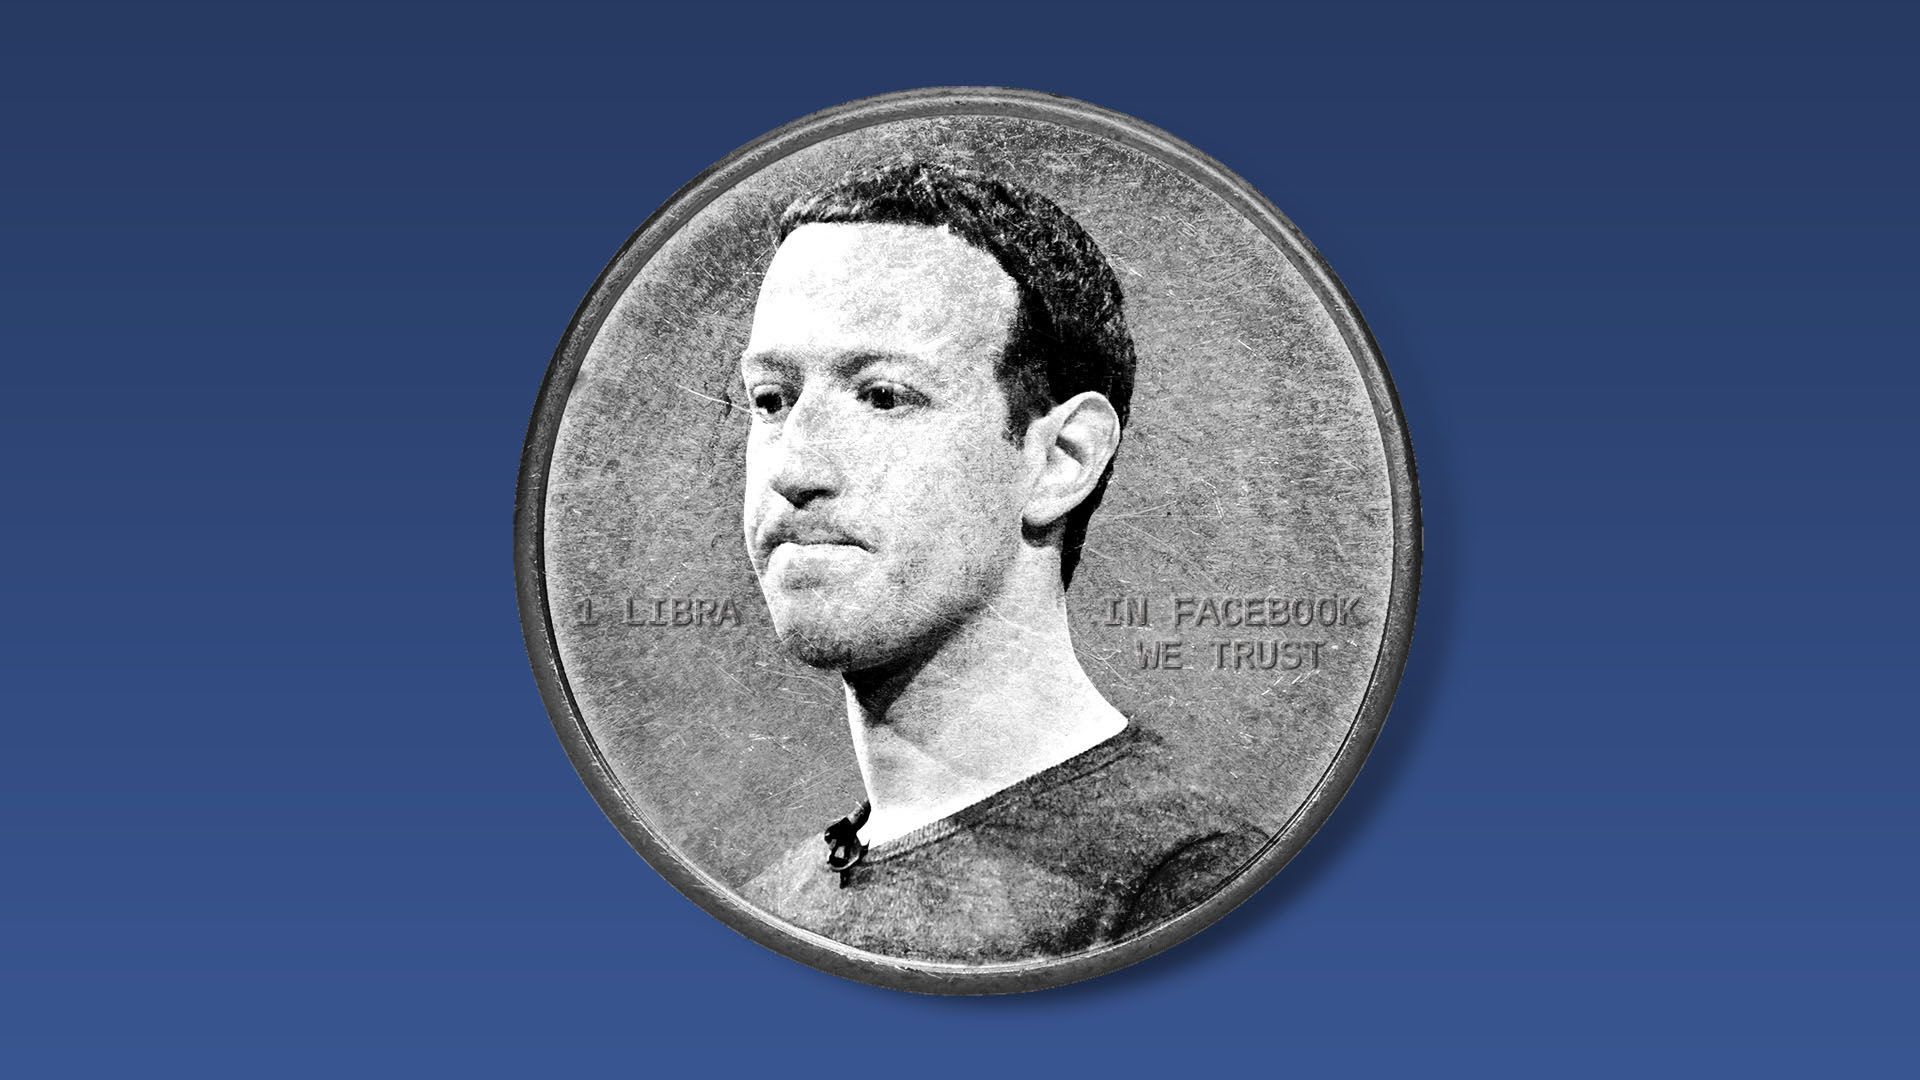 Mark Zuckerberg's face on a coin. 